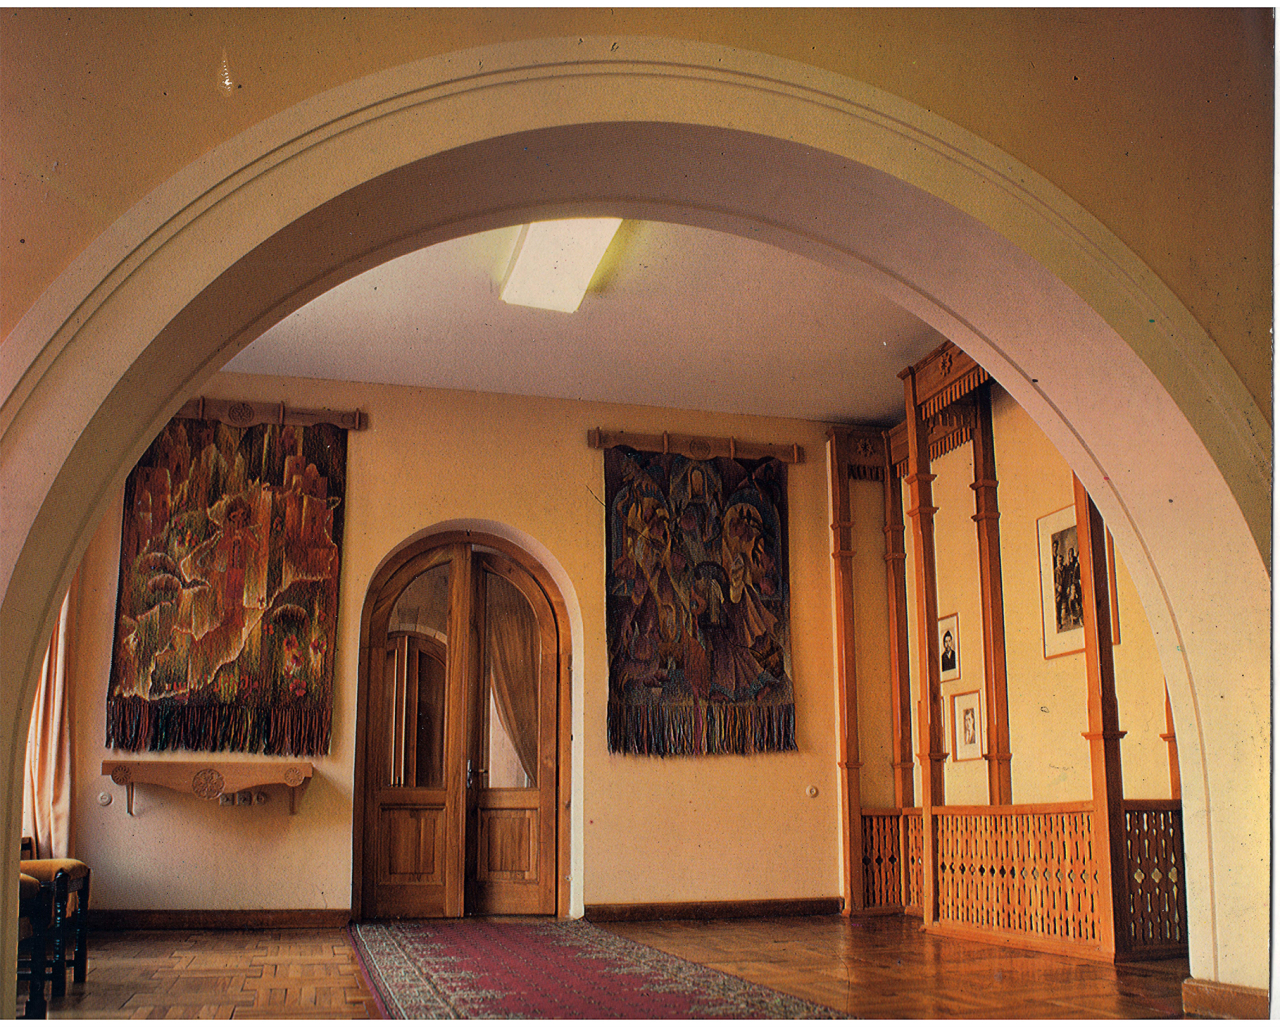 Լուսանկար գունավոր. Ա. Խաչատրյանի տուն-թանգարանի ցուցասրահներից մեկը